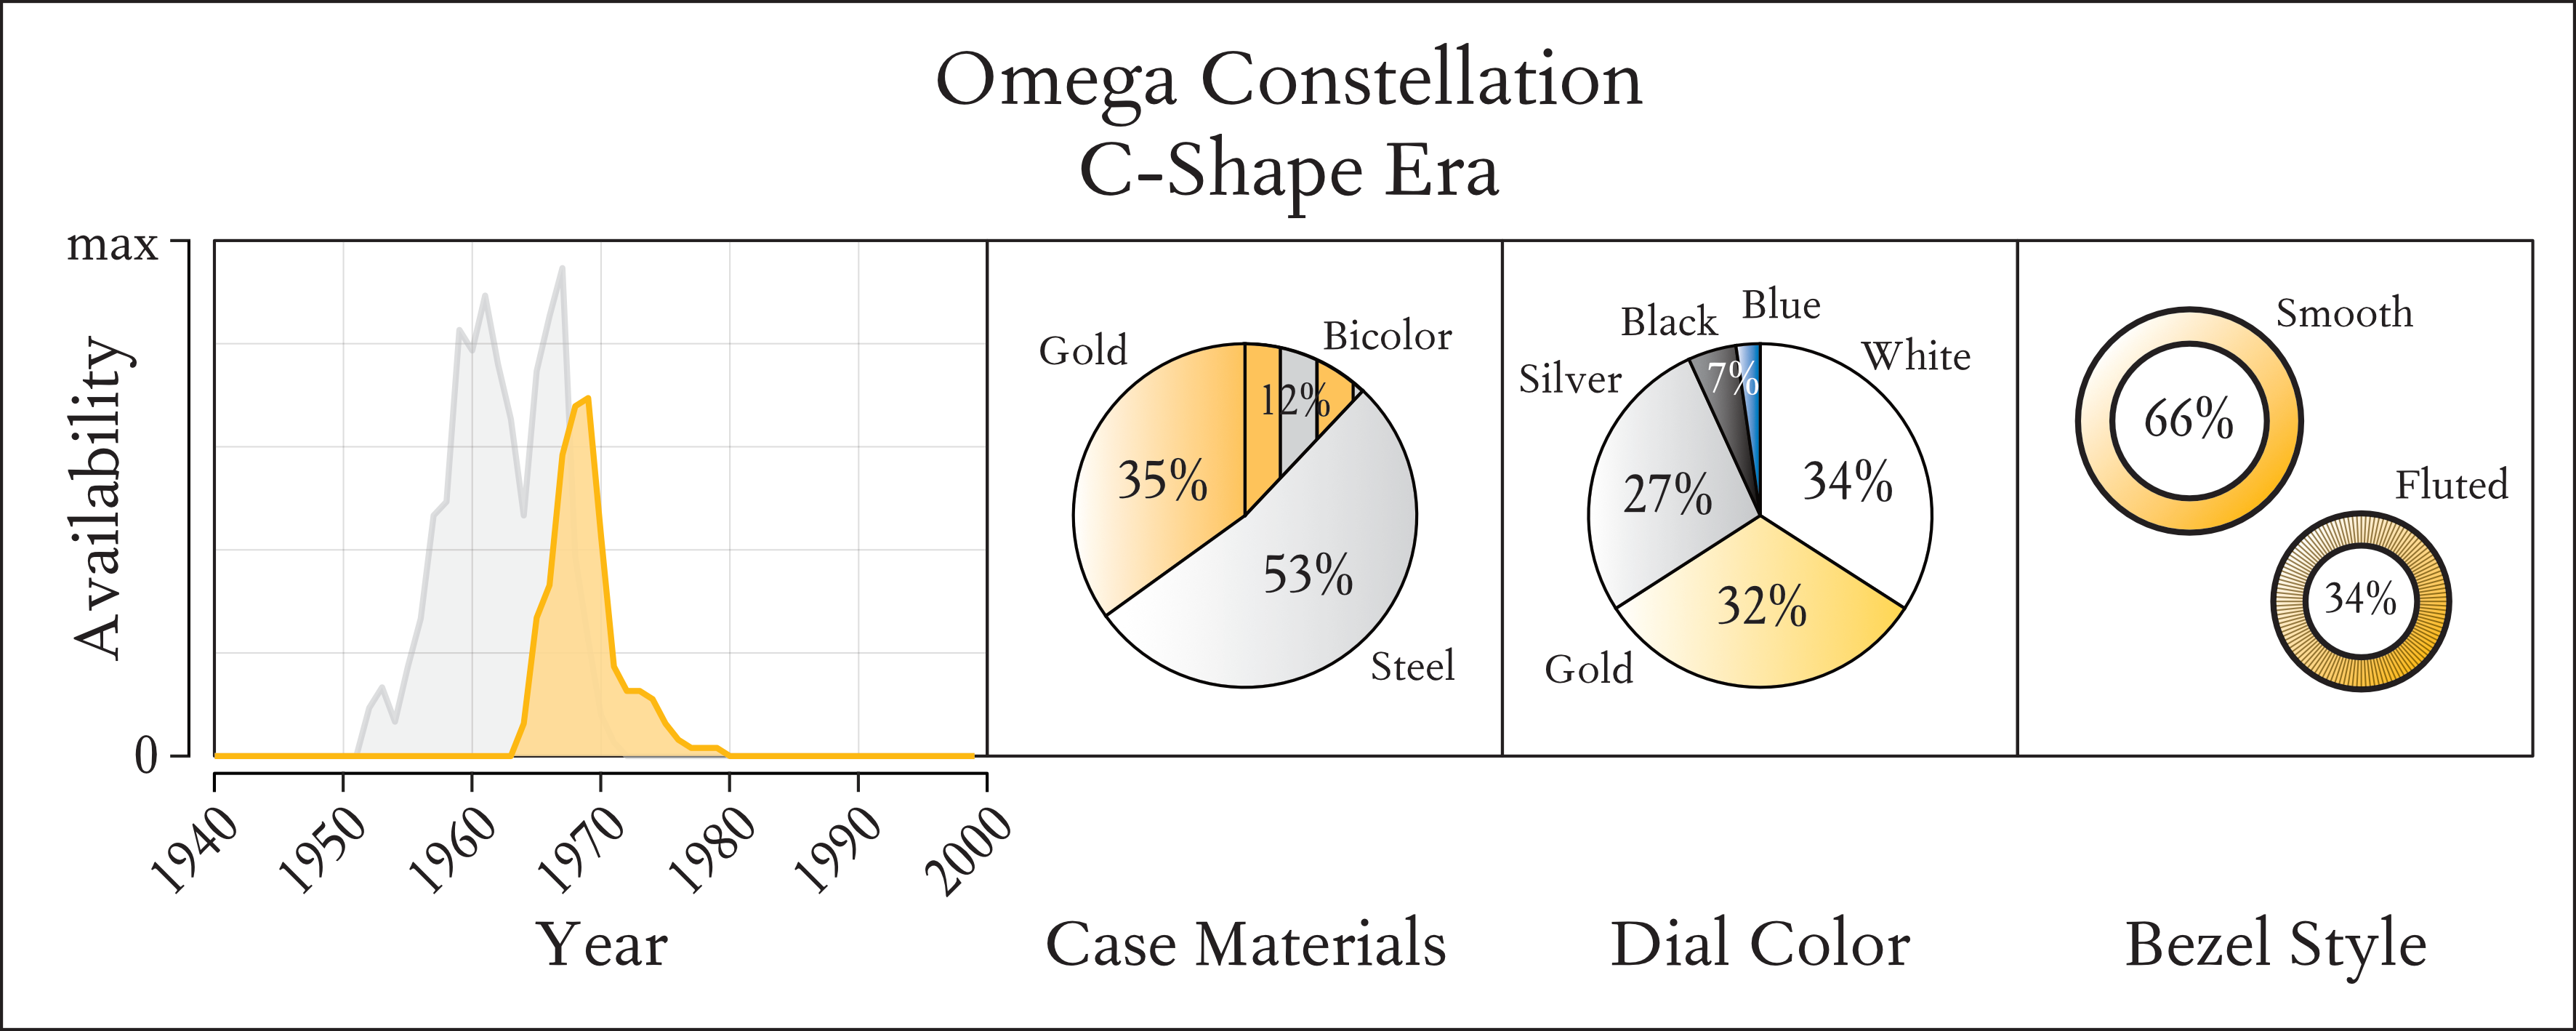 図1. オメガ・コンステレーションCシェイプの定量的ガイド。左側に市場全体の在庫状況（Cシェイプはゴールド、パイパンはグレー）、ケース素材（左中）、文字盤カラー（右中）、ベゼル・スタイル（右）の分布を示しています。